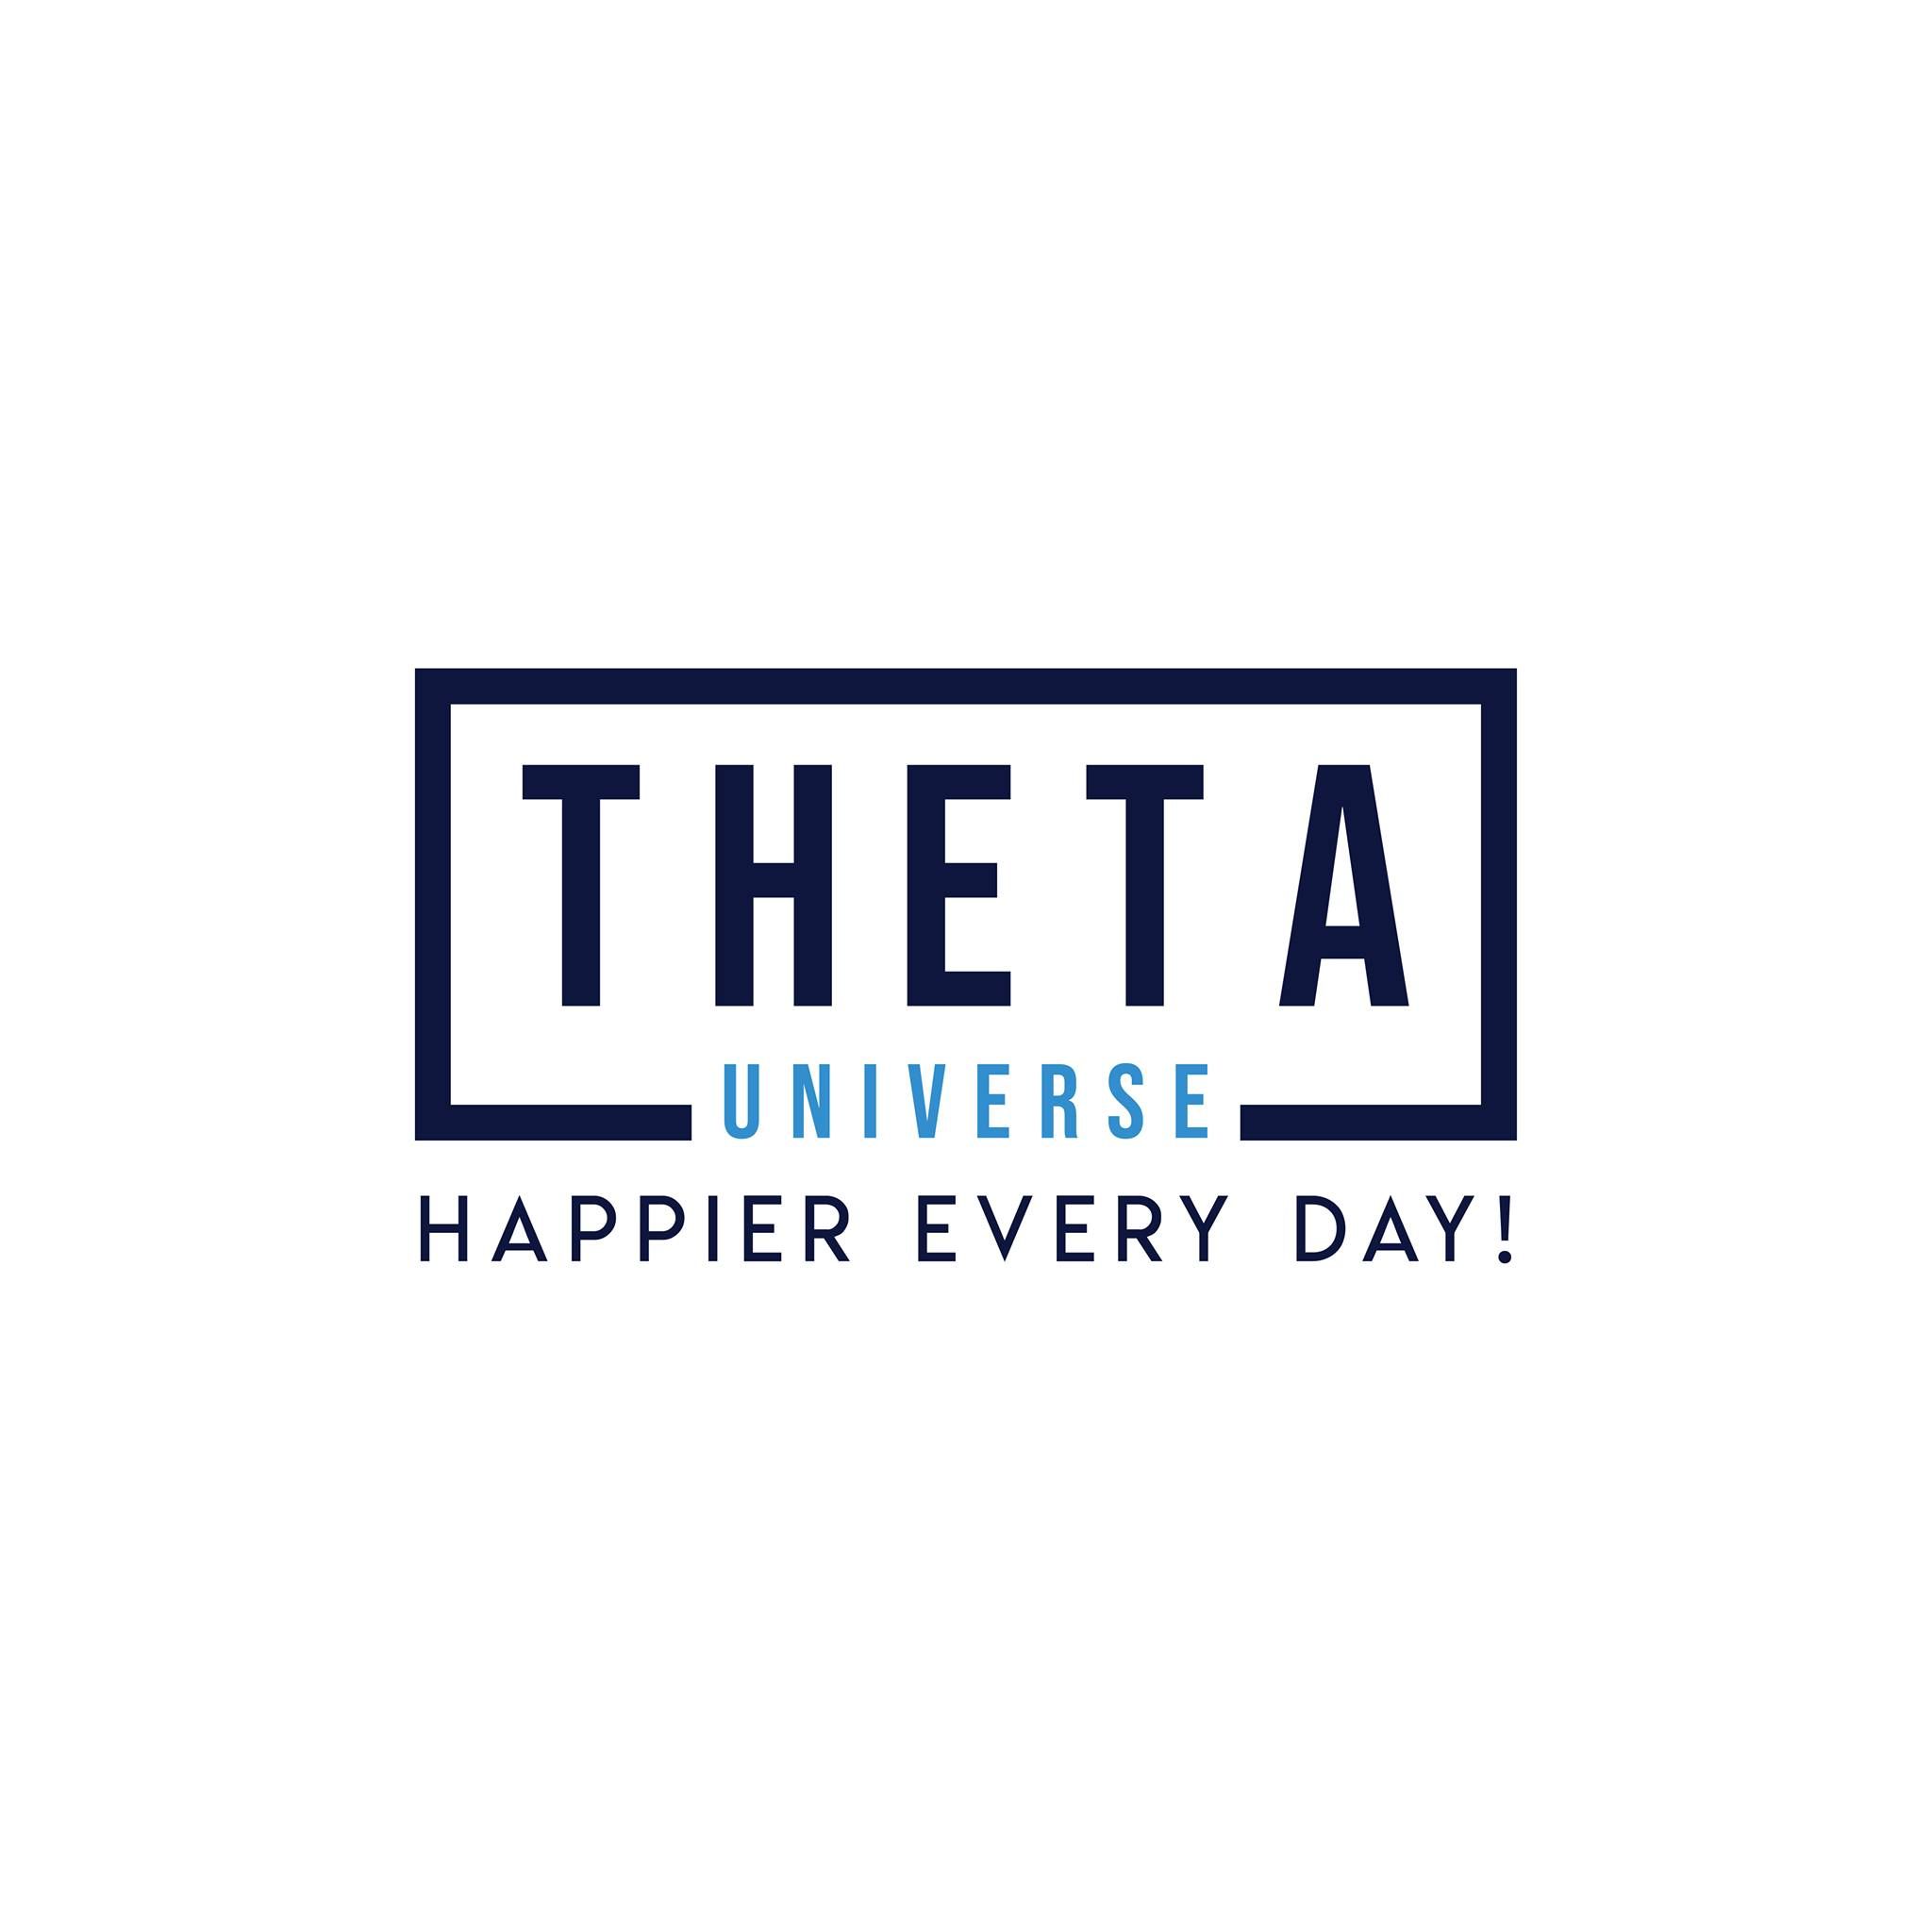 Công ty TNHH Theta Universe Media